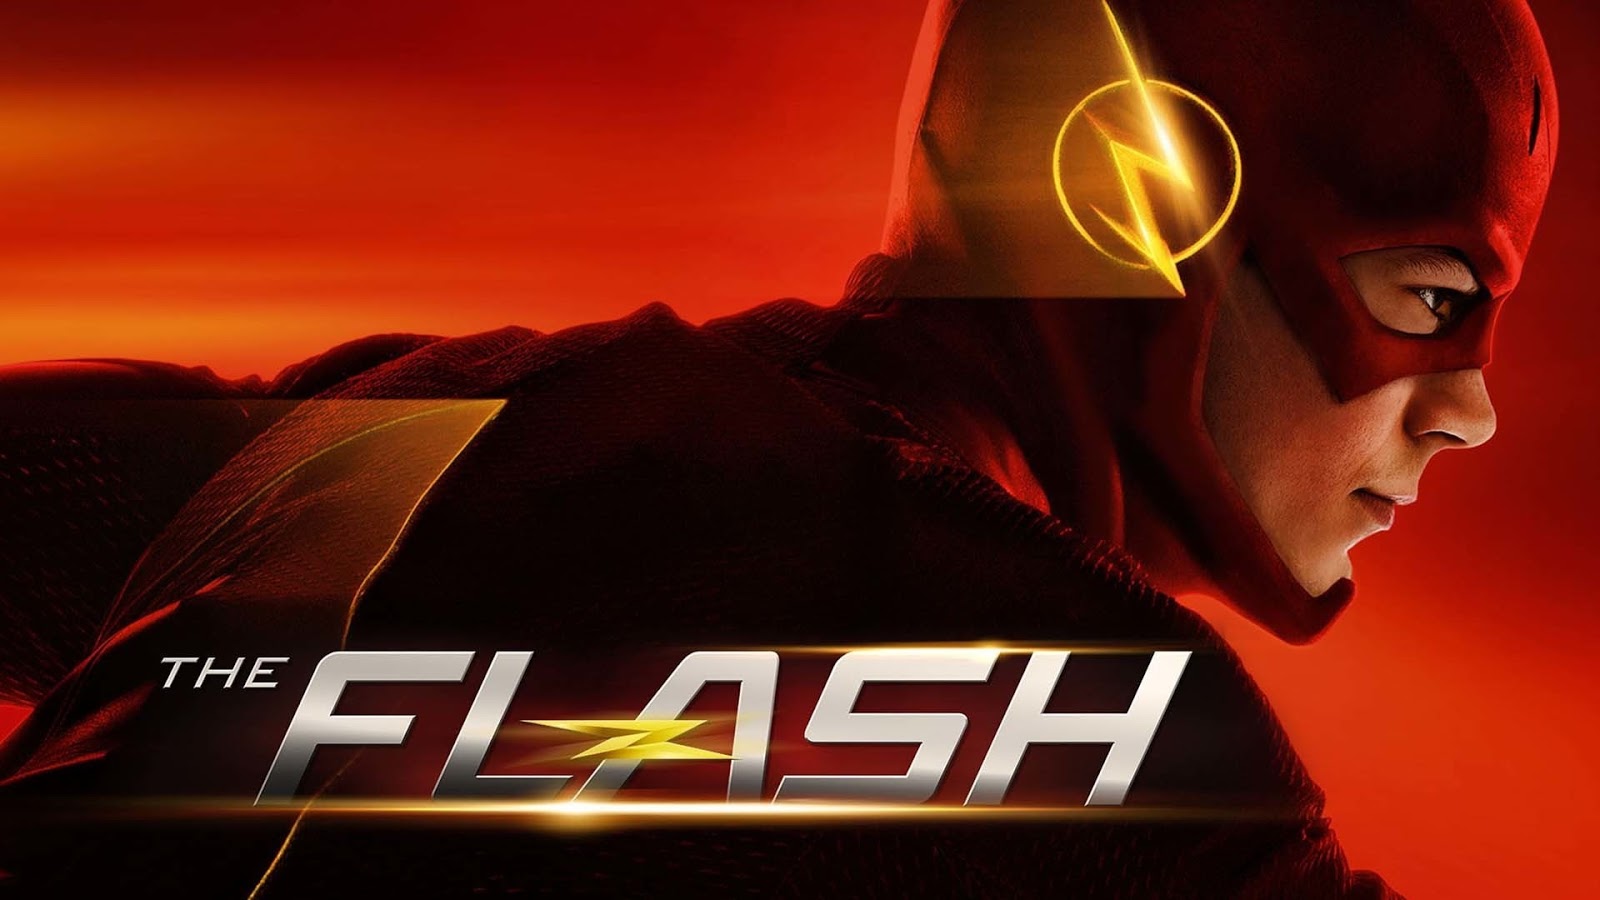 the flash tv series fondos de pantalla hd,juego de acción y aventura,destello,juegos,película,héroe